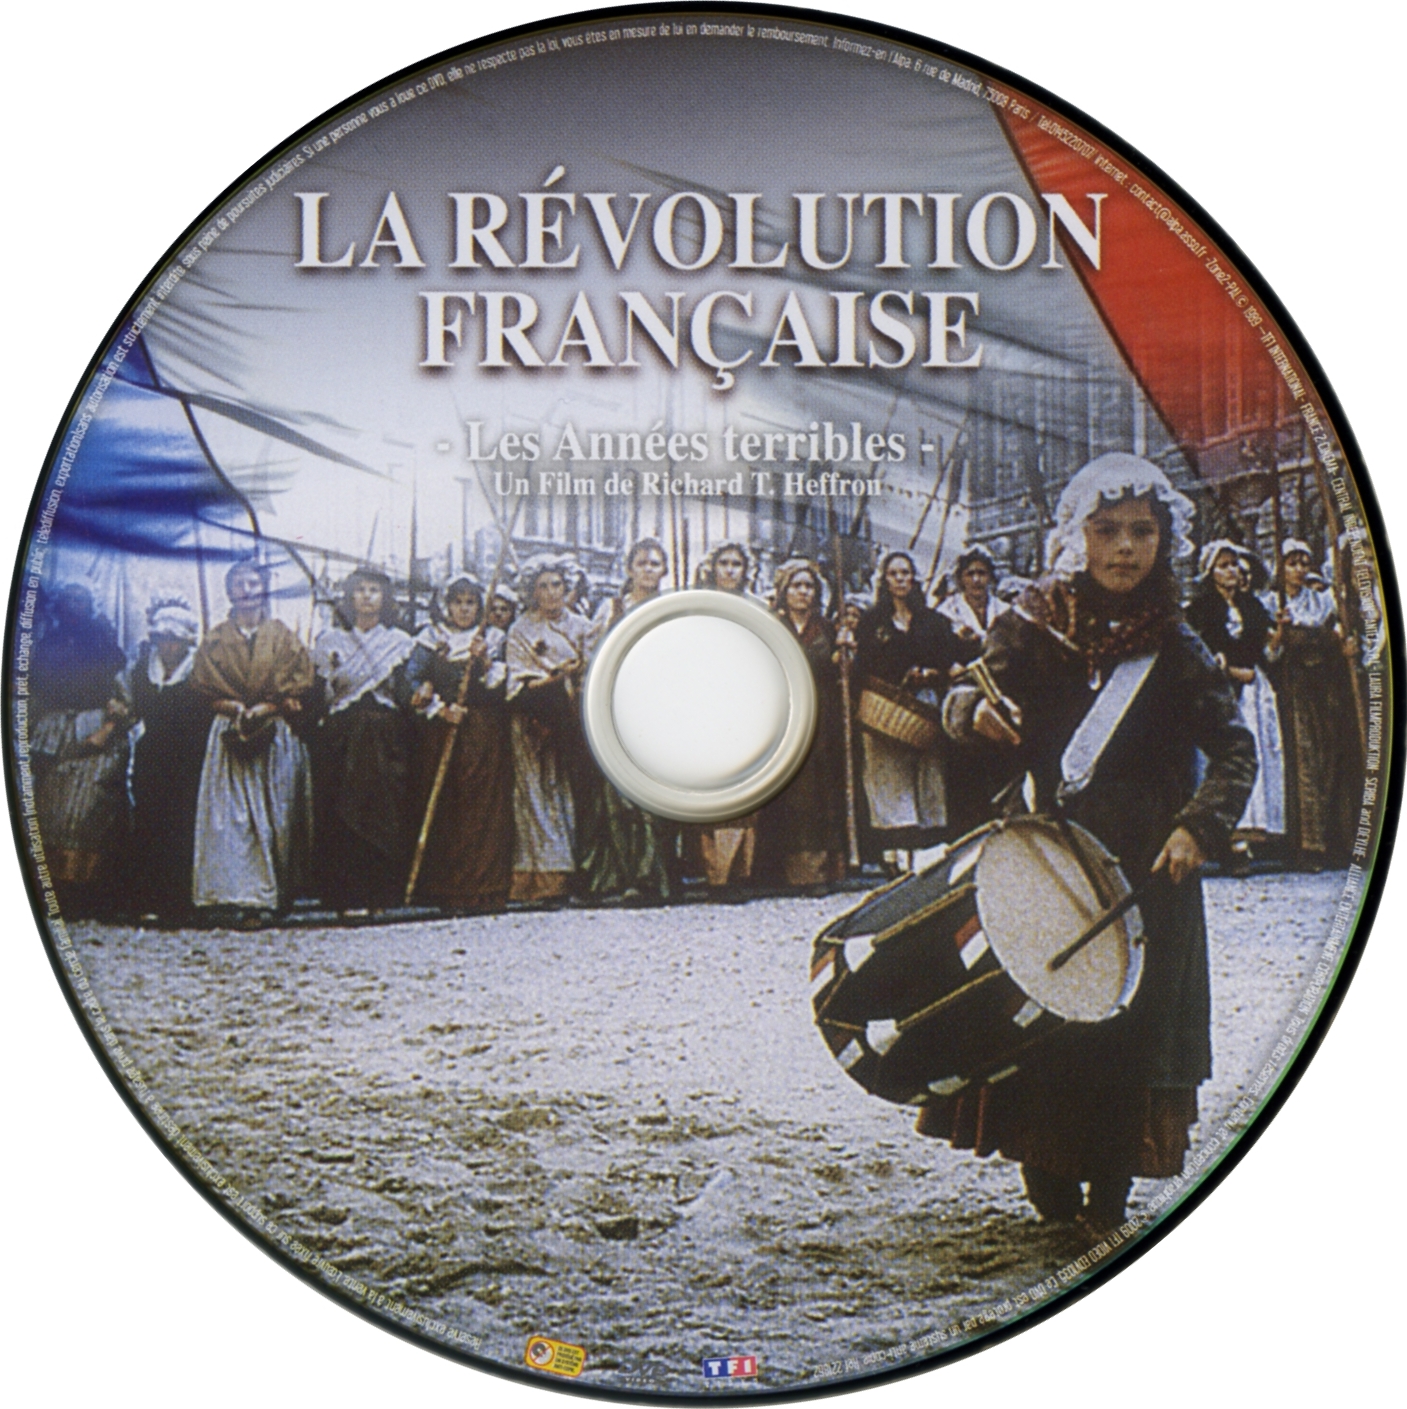 La rvolution Francaise DVD 2